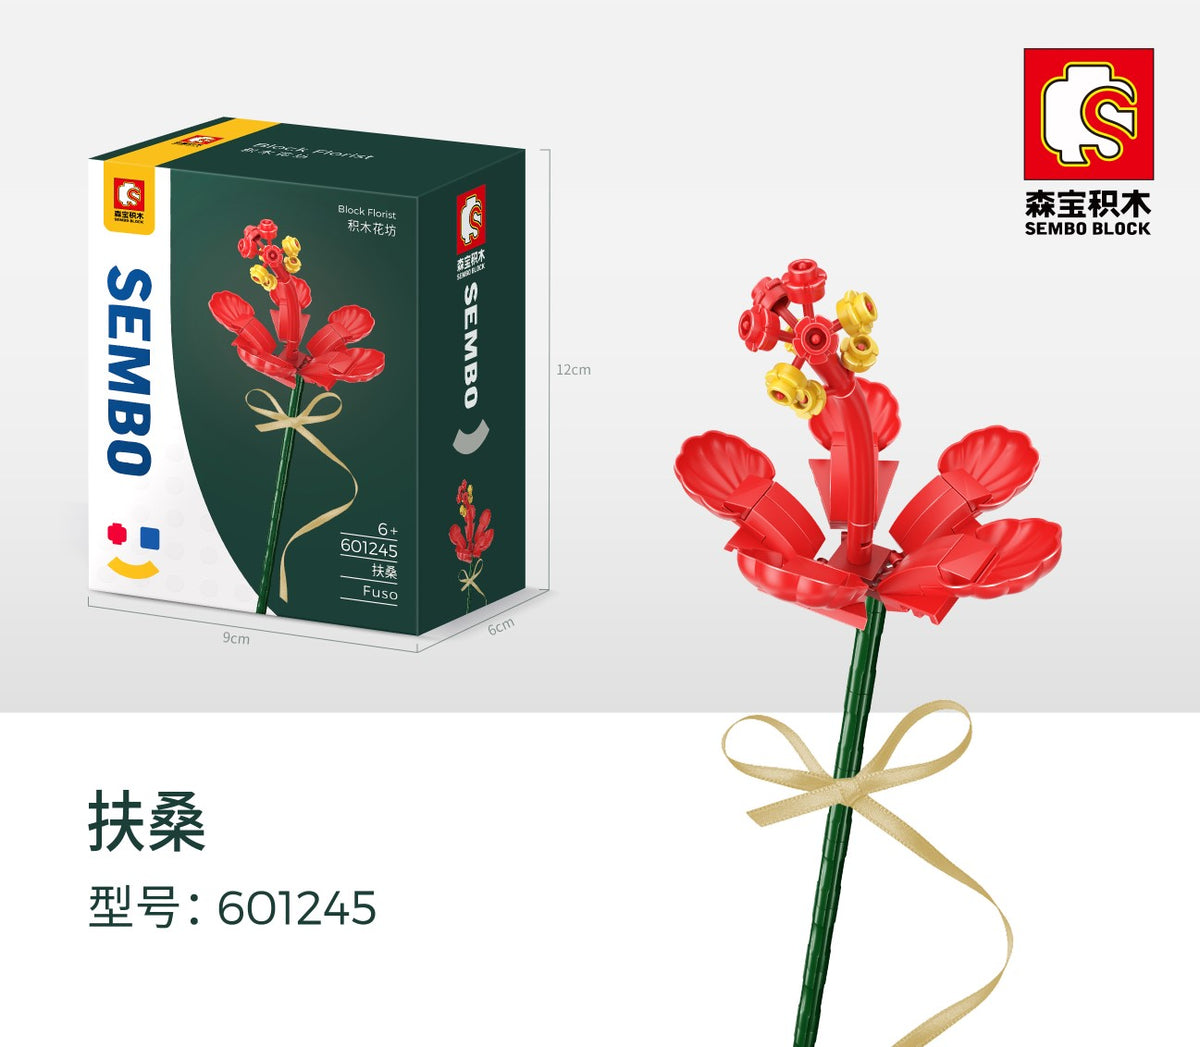 601245 - rote Fuso Blume (Sembo)